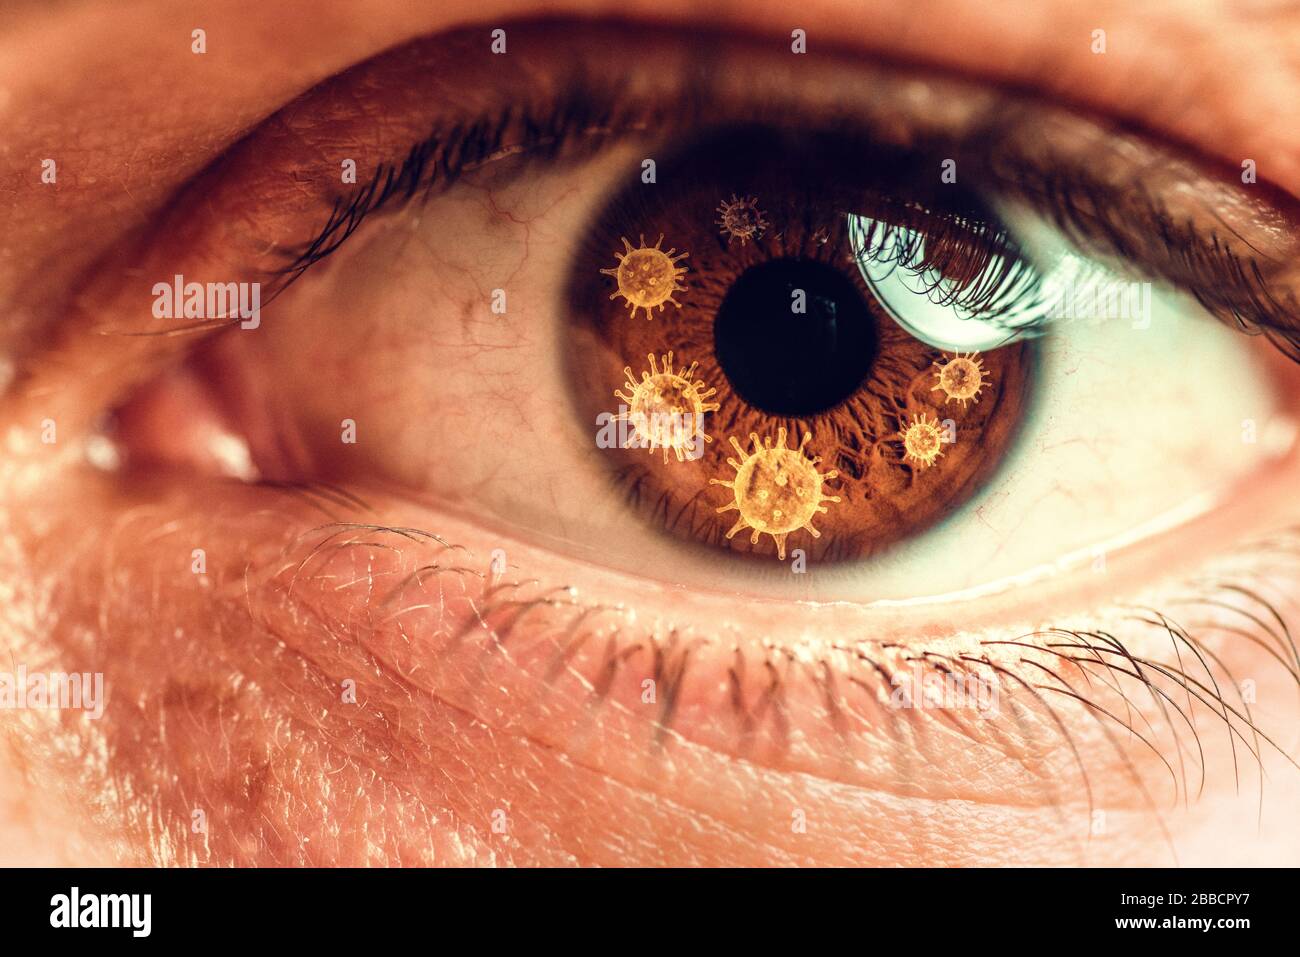 Primo piano, macro foto di occhio umano, iride, pupilla, ciglia, palpebre. Tema astratto del virus corona Foto Stock